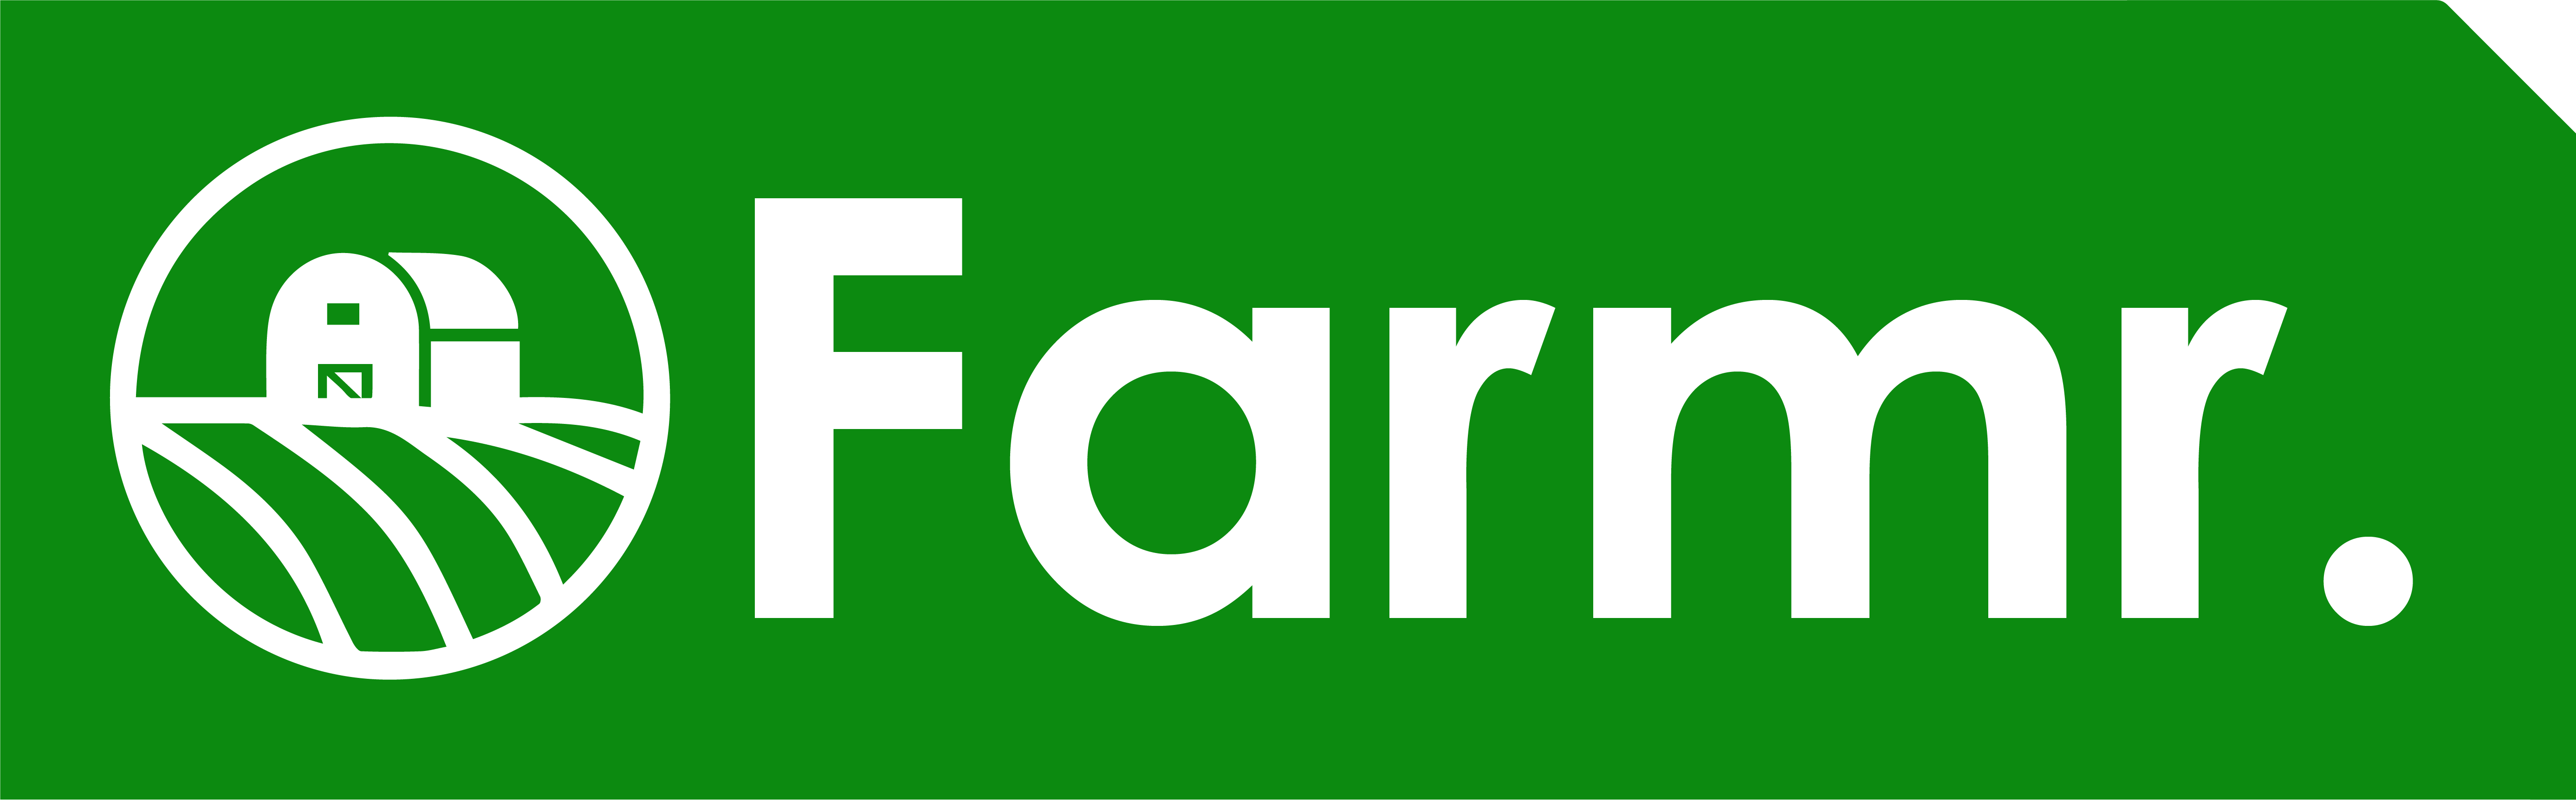 farm